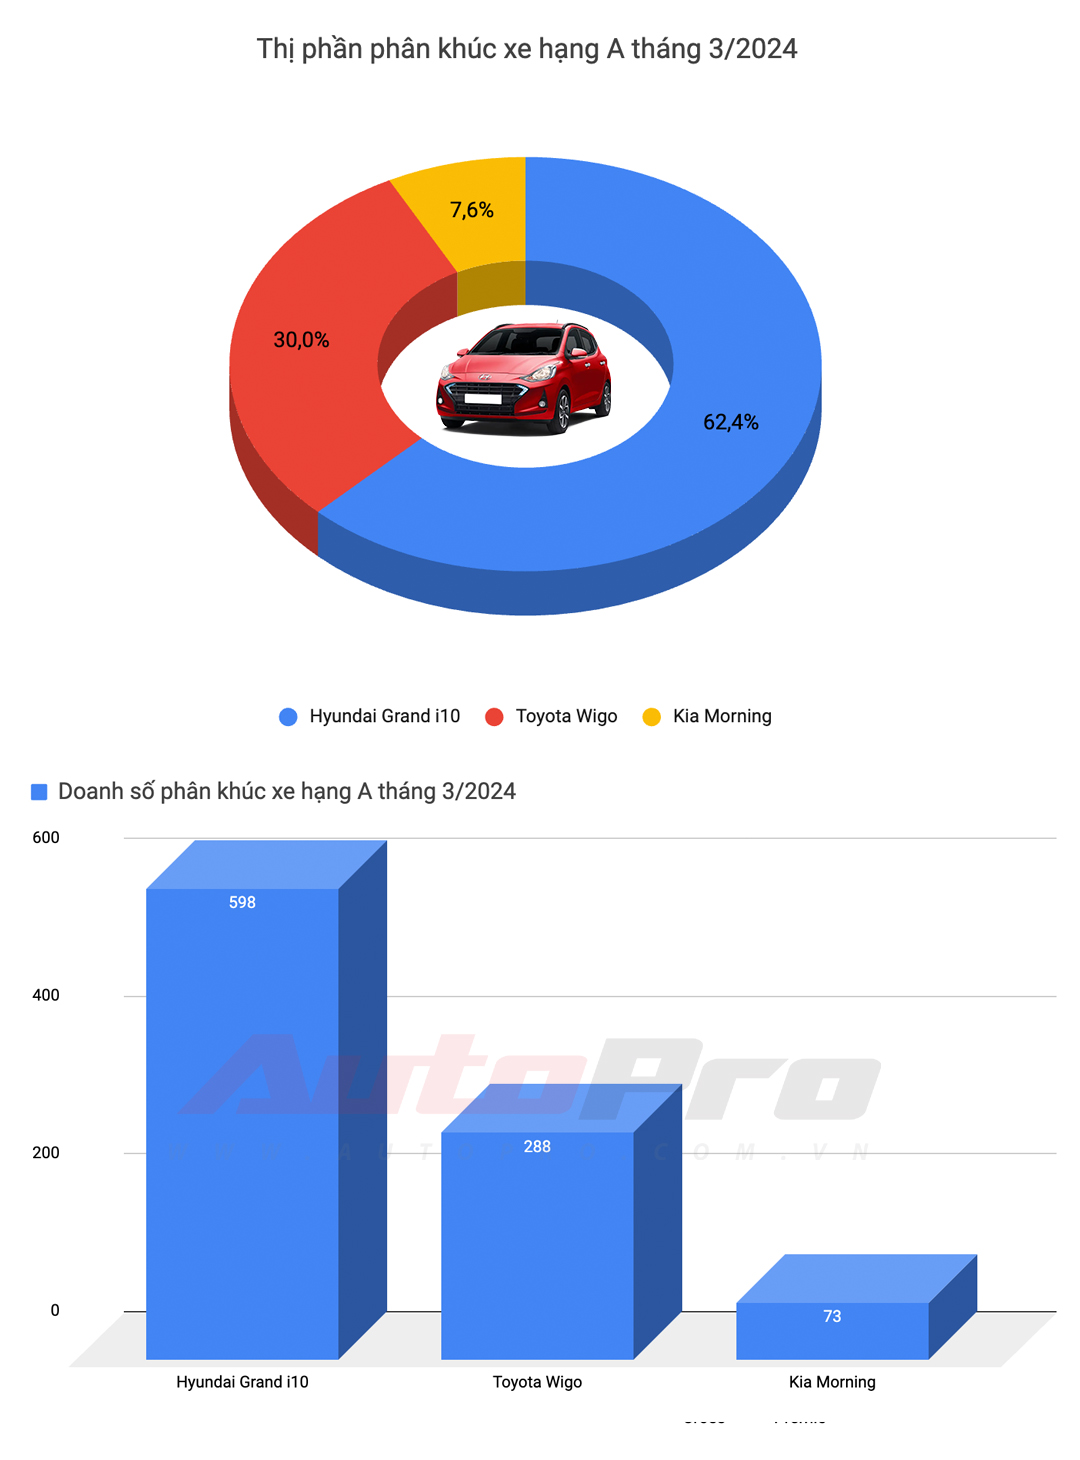 Mitsubishi Xforce hoá hiện tượng doanh số trong tháng đầu mở bán, Toyota có mỗi Vios lọt top bán chạy - Ảnh 2.